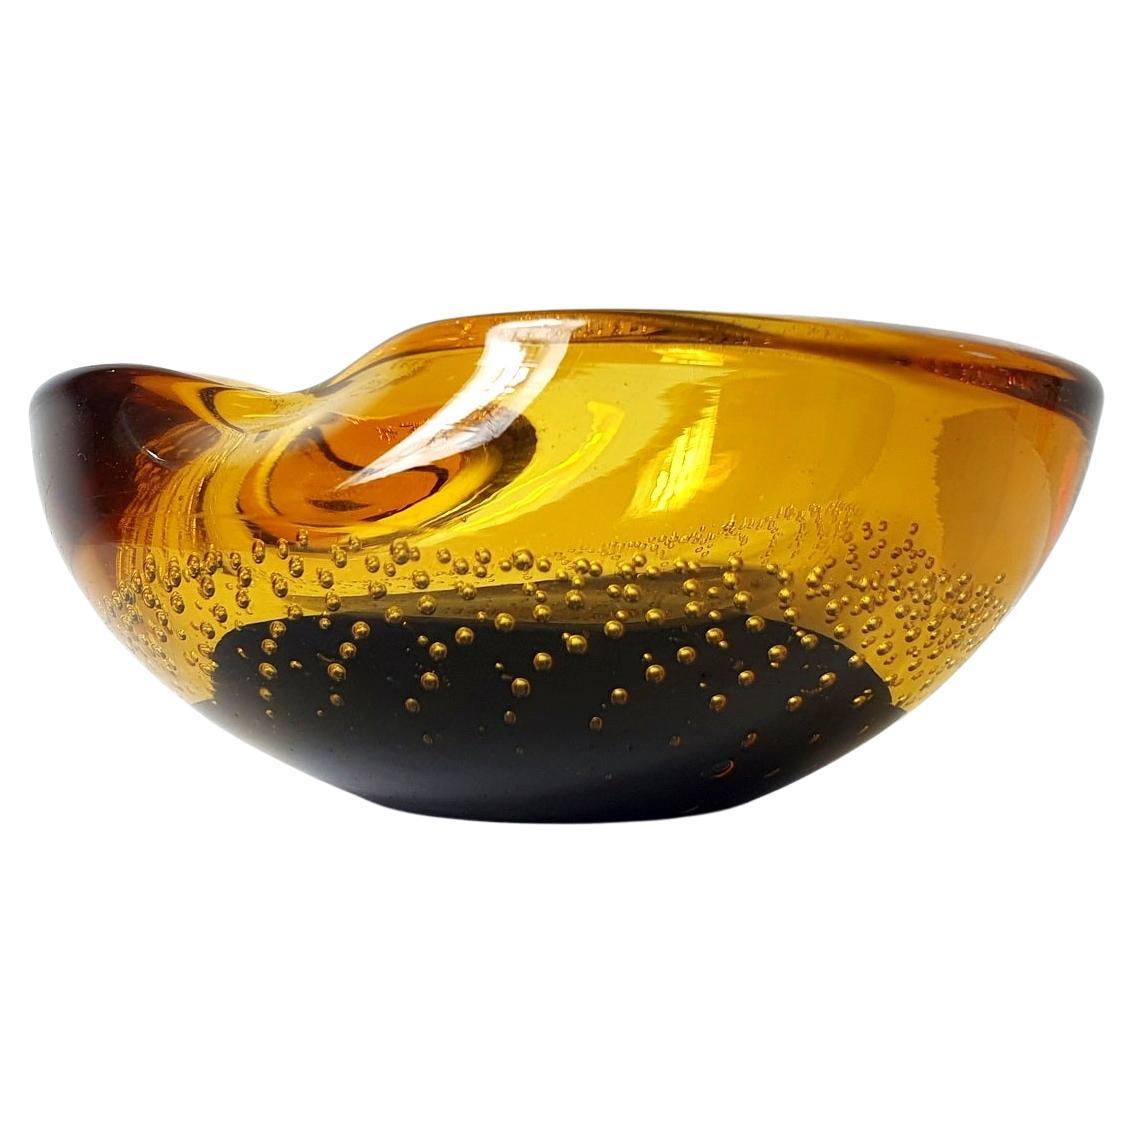 Organisch geformte Glasschale aus den 1960er Jahren in zwei Farben aus Murano mit Luftblasenmuster. Hervorragend geeignet zum Ablegen von Schlüsseln und anderen Dingen oder als Snackschale.